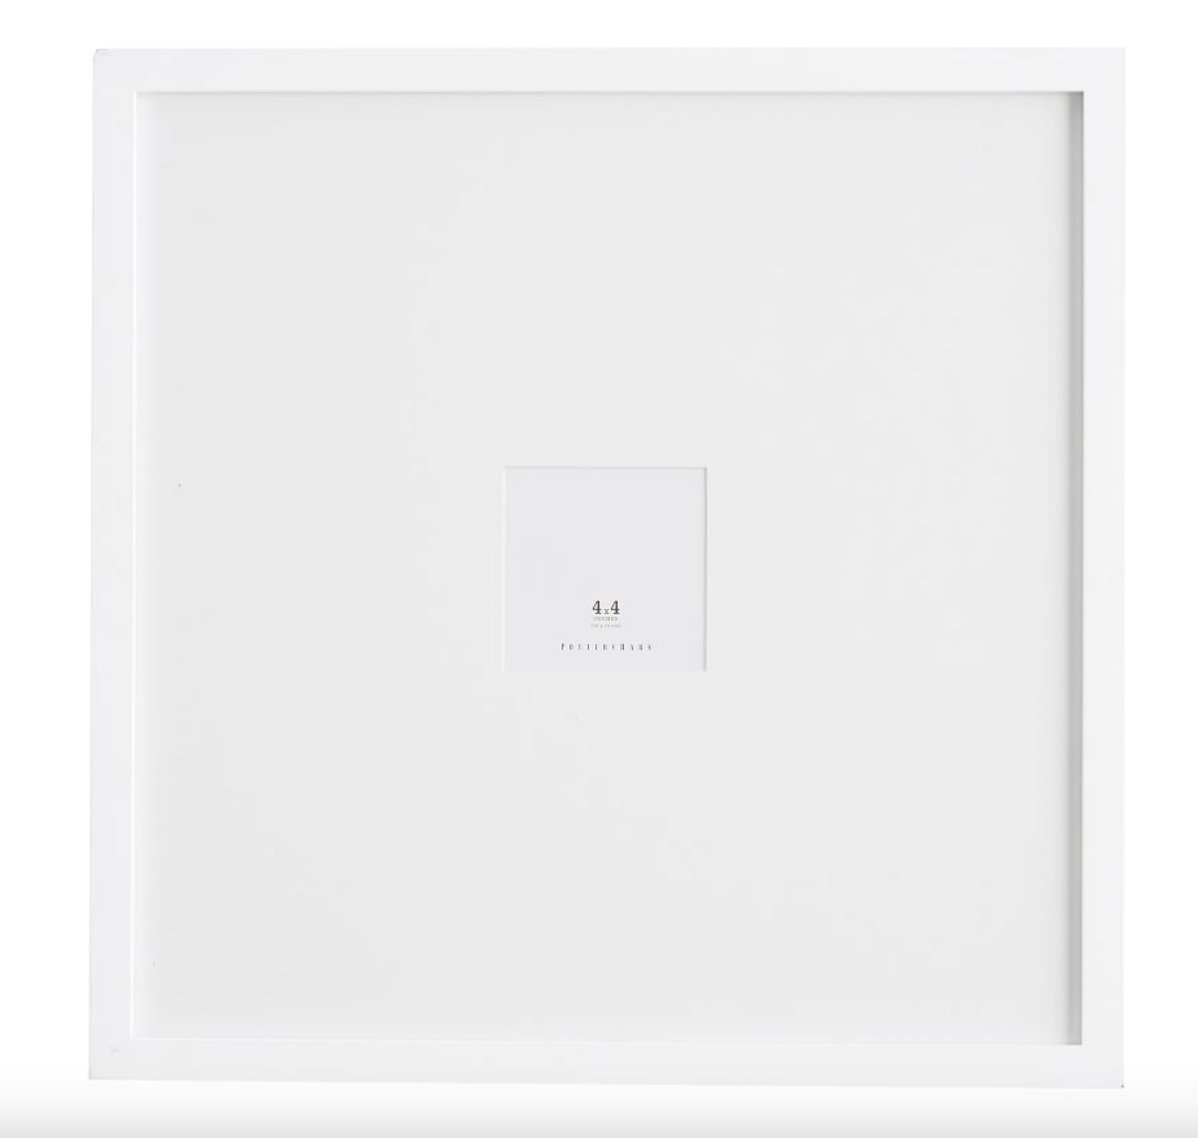 Wood Gallery Oversized, 25" x 25", White - Image 0